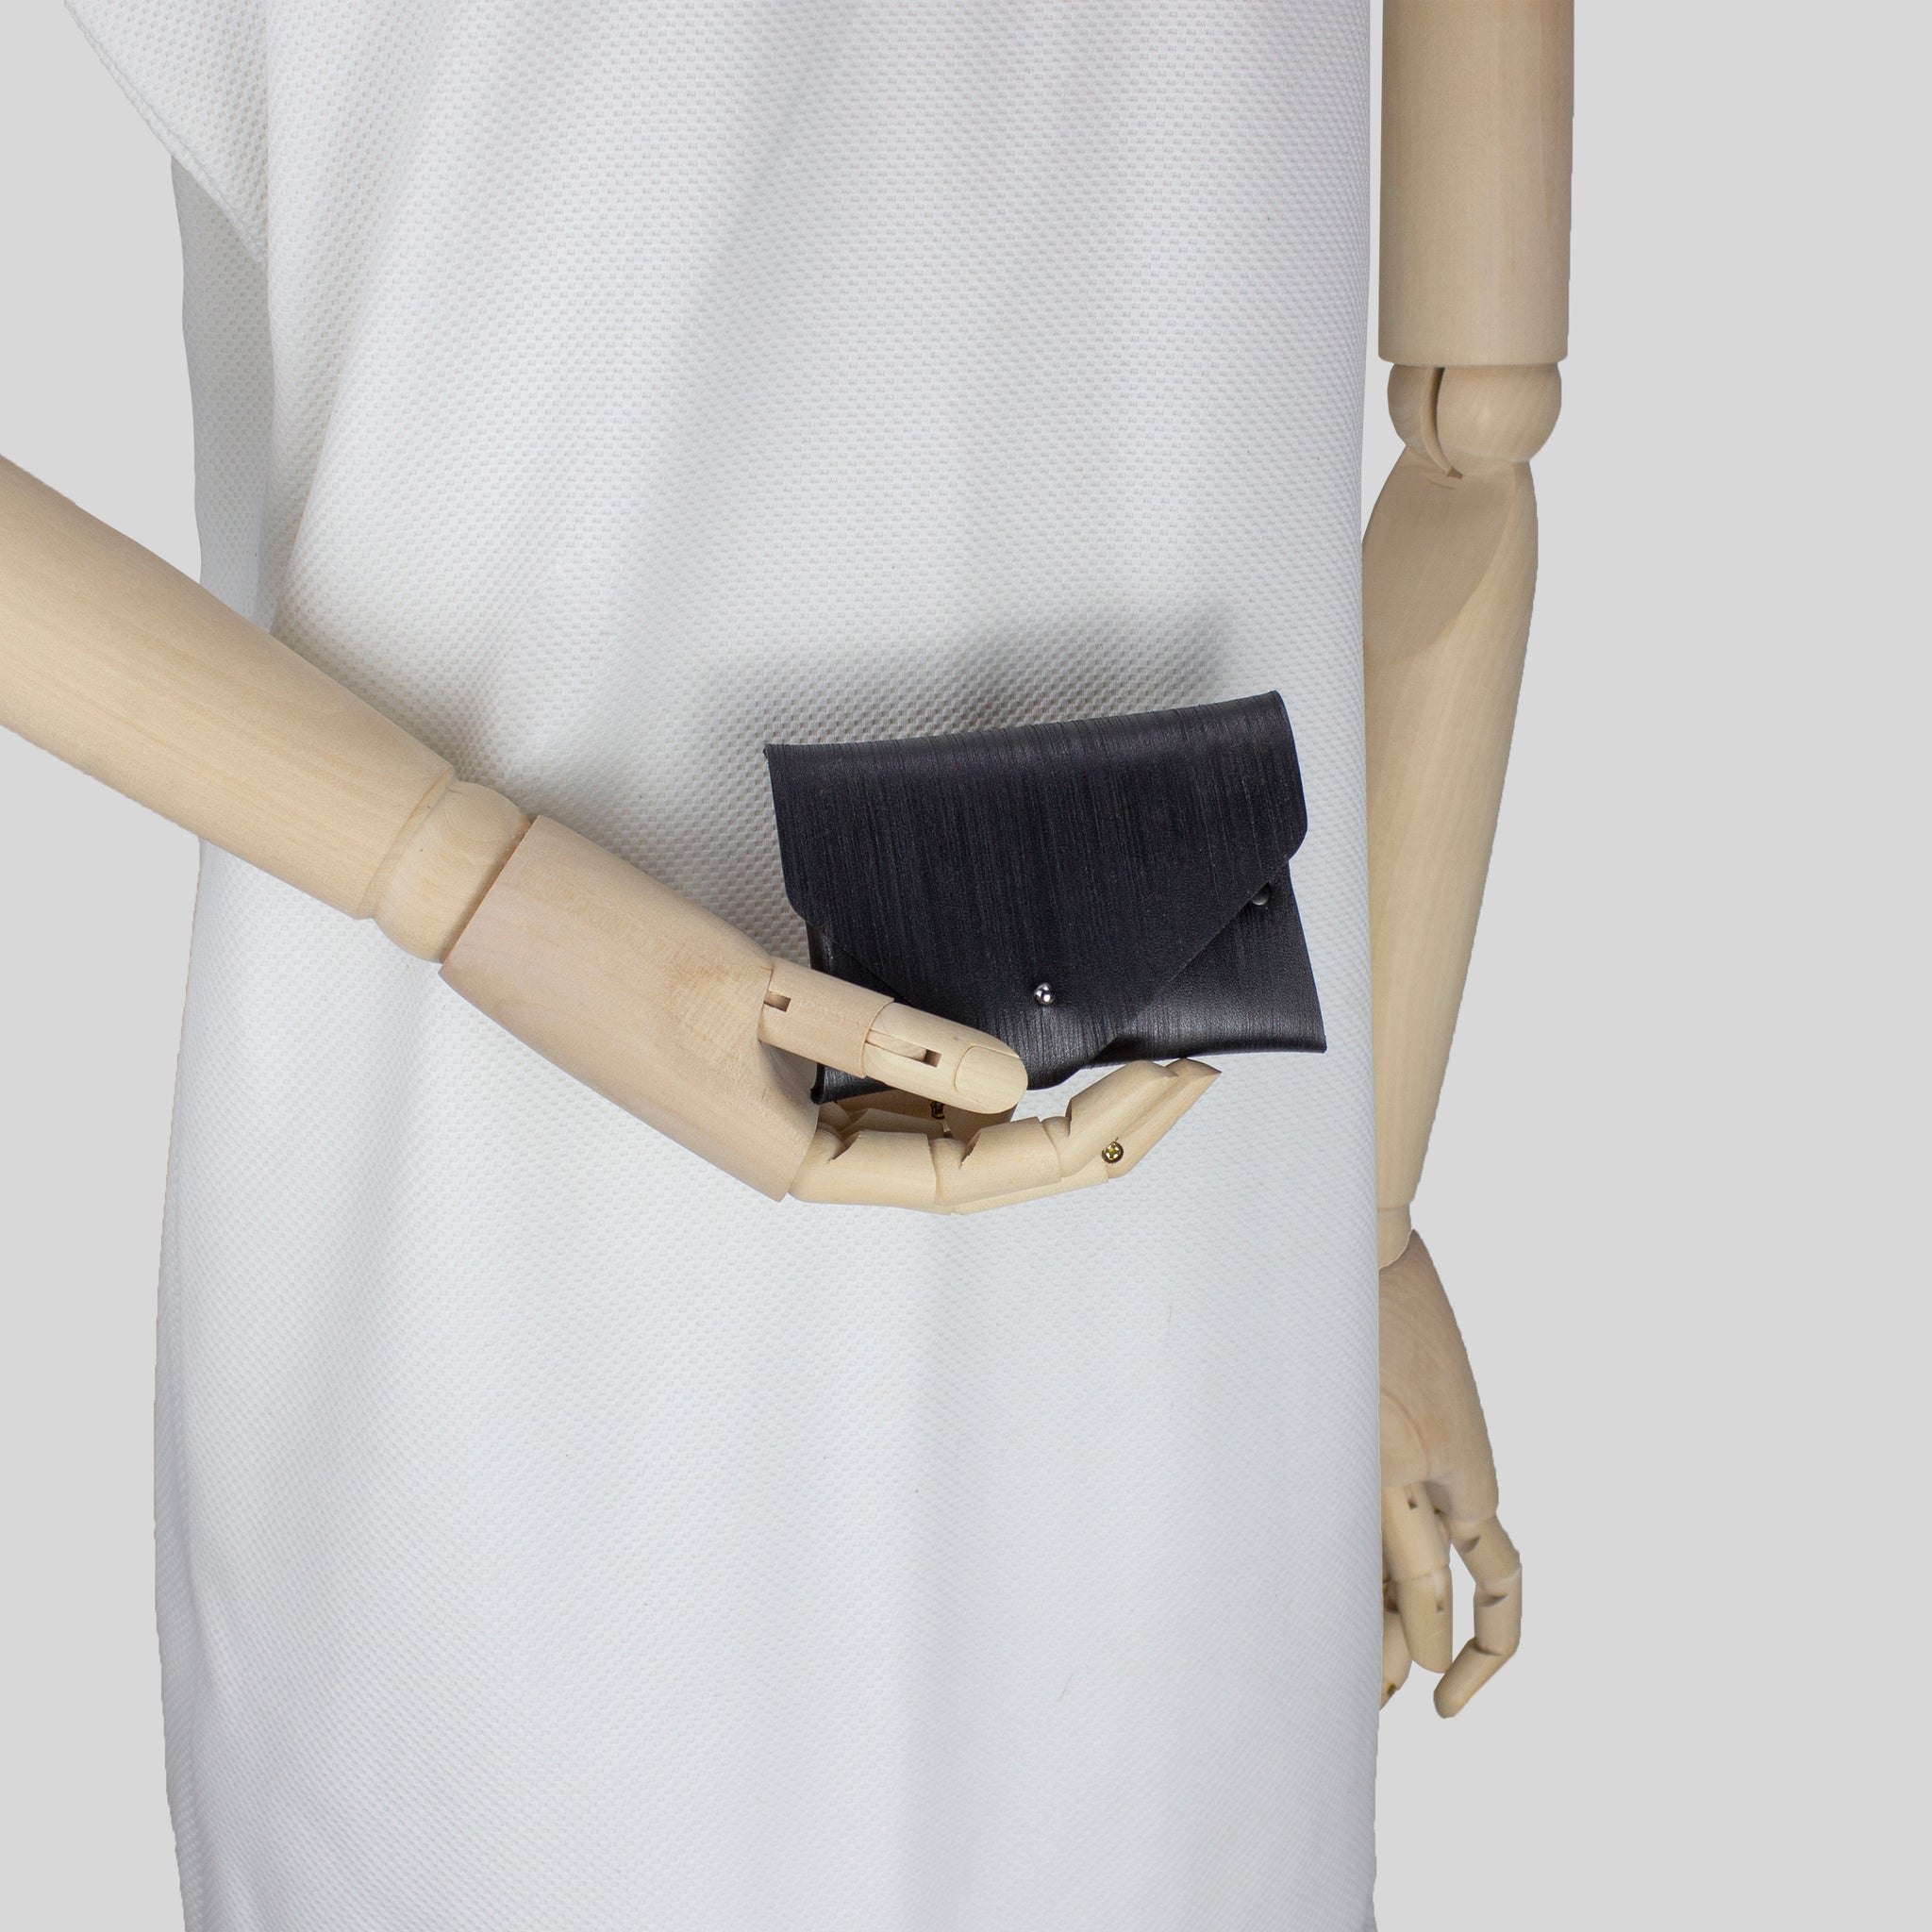 Card holder / coin purse black